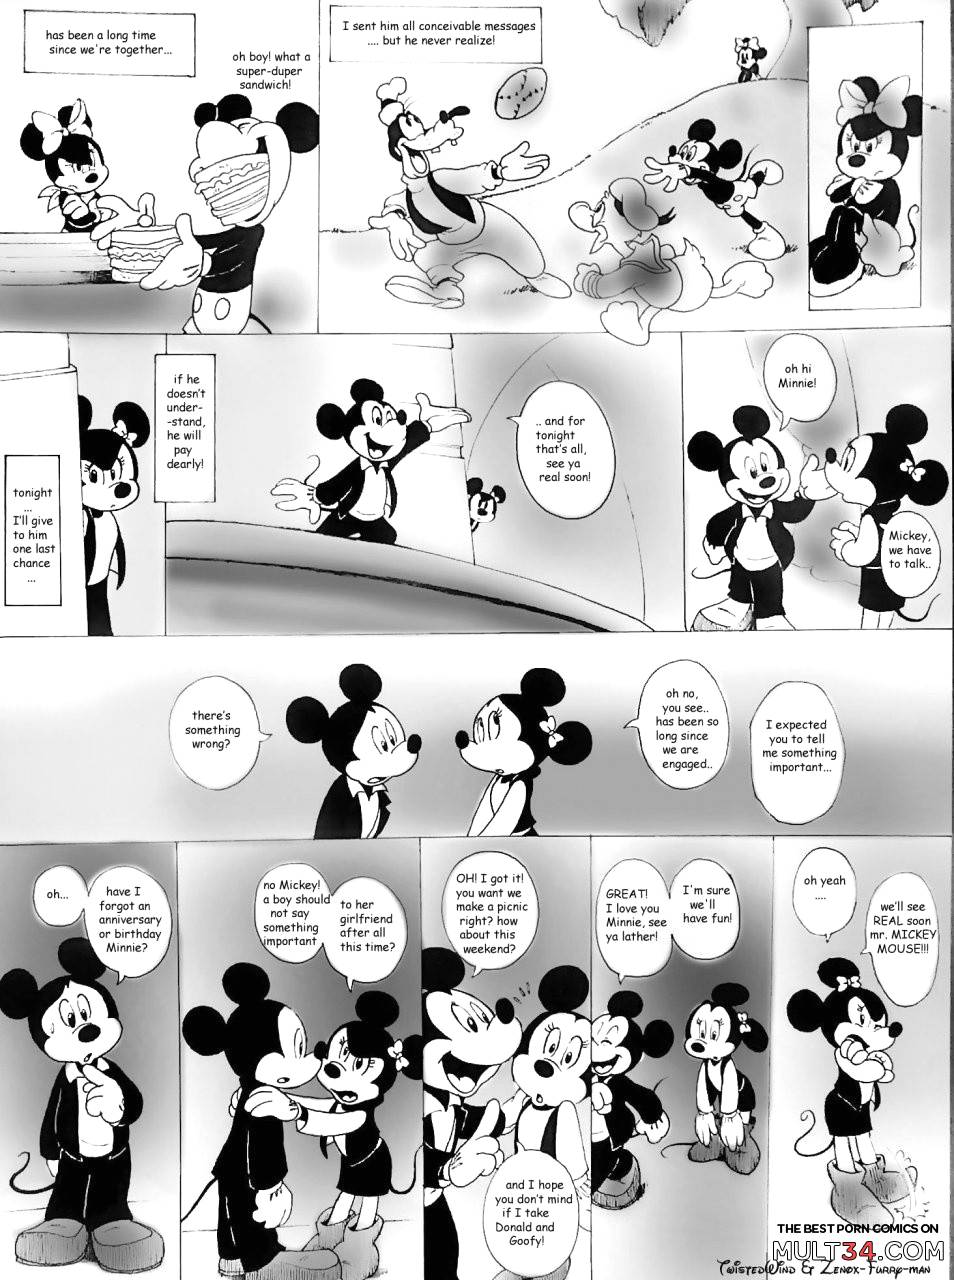 954px x 1280px - House of Mouse XXX porn comic - the best cartoon porn comics, Rule 34 |  MULT34